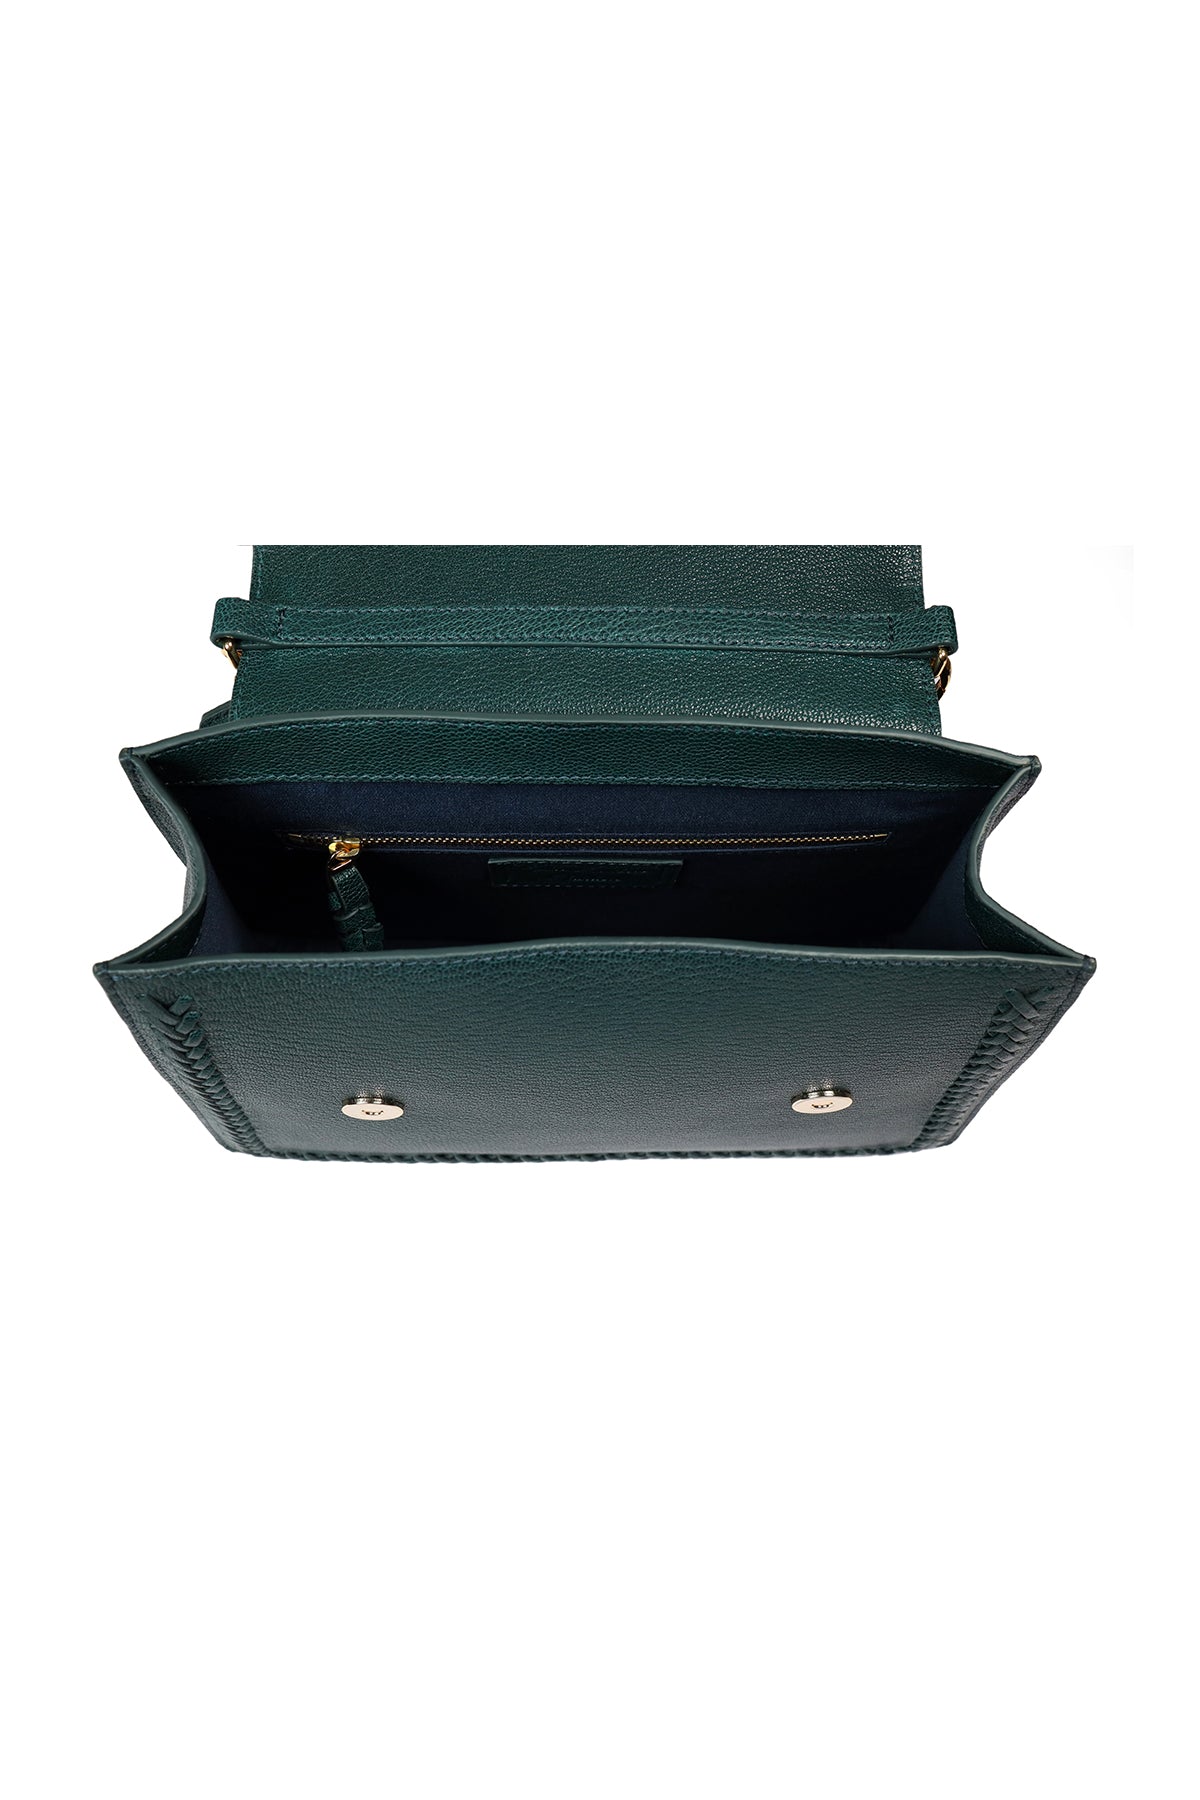 Geranium-Forest Green Leather Shoulder Bag